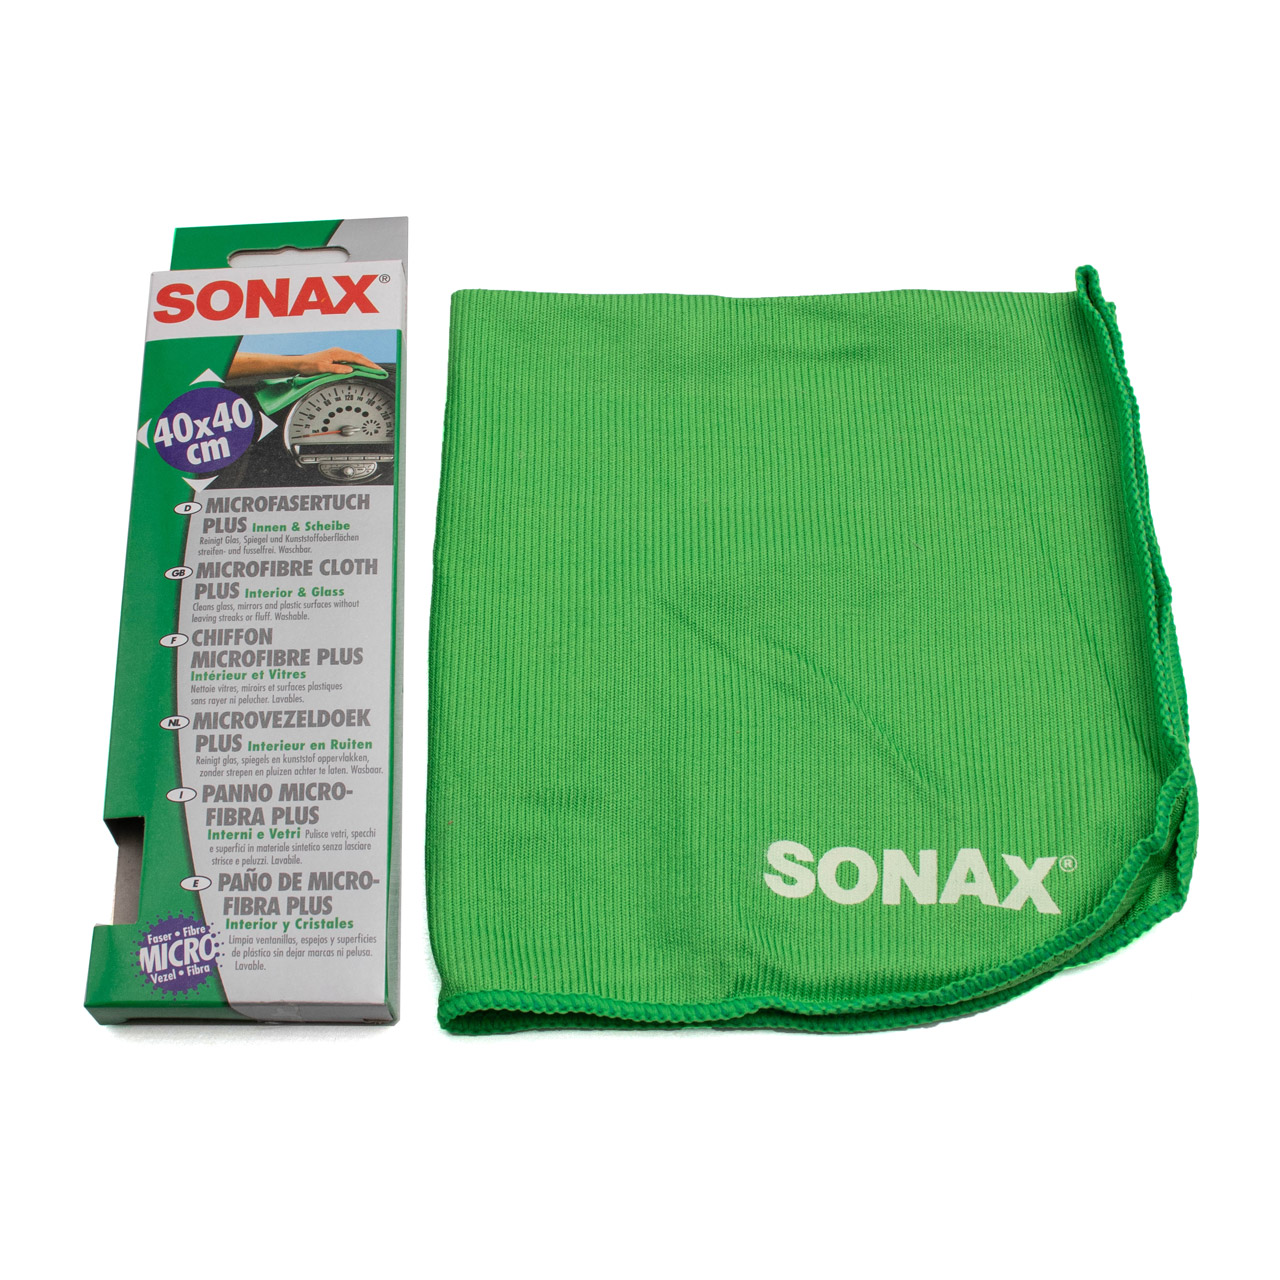 SONAX Microfaser Tuch PLUS Innen und Scheibe 1 Stück Reinigung 416500